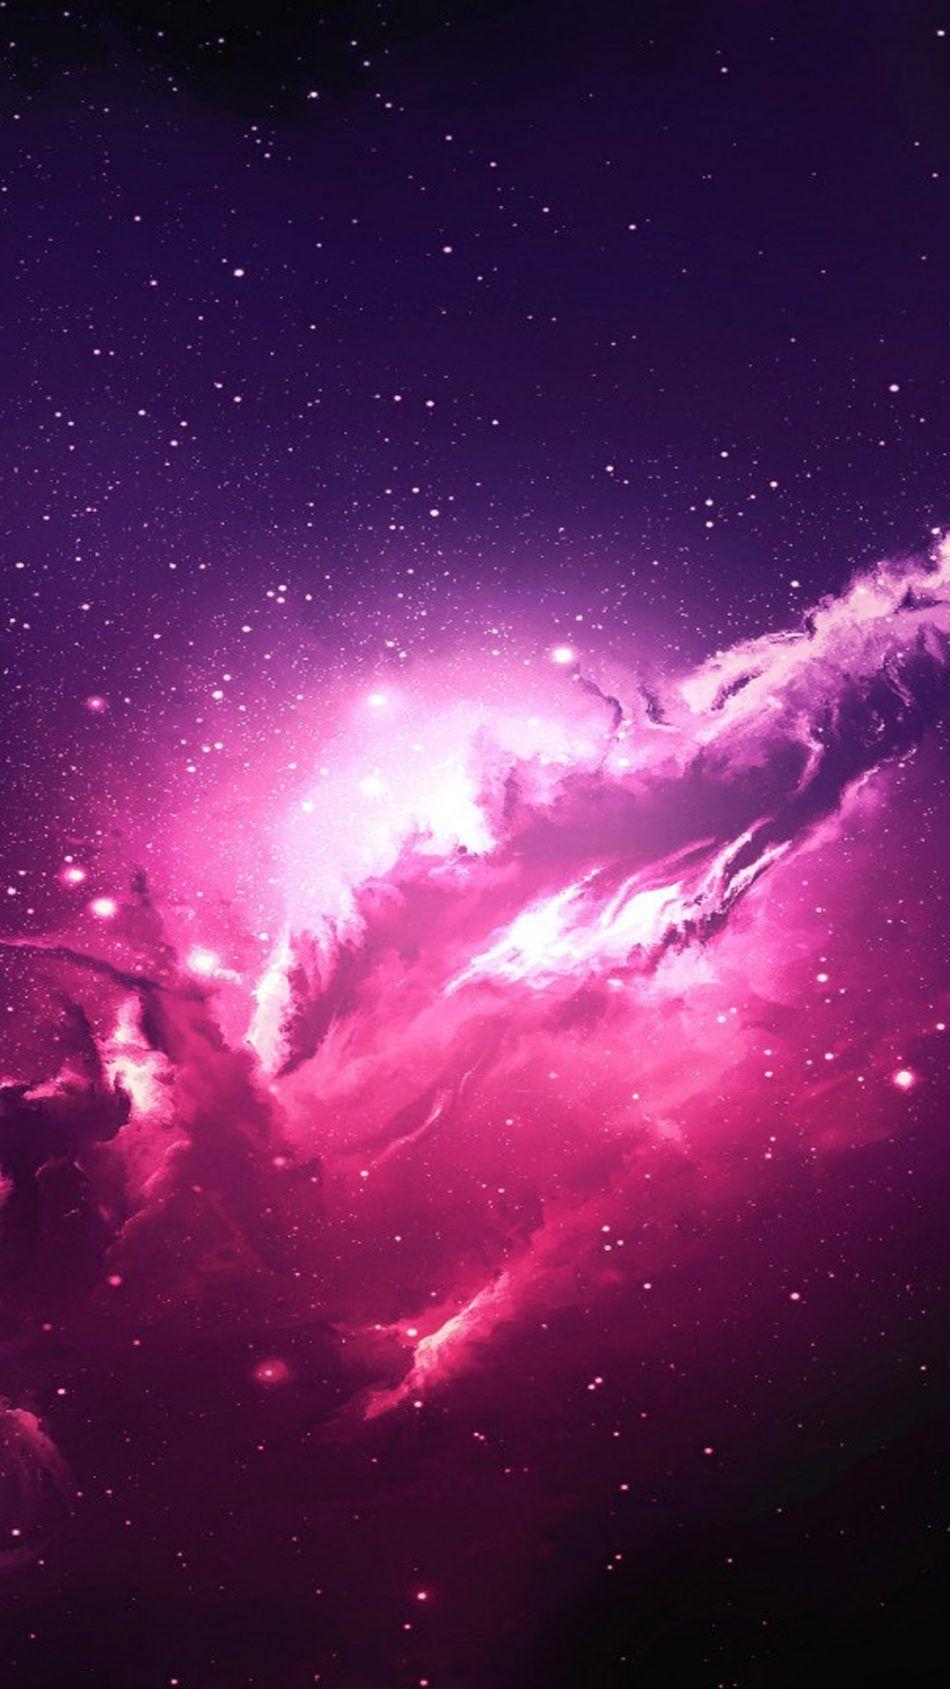 Hình nền Galaxy Pink trên iPhone: Những hình nền Galaxy Pink trên iPhone sẽ mang đến cho bạn sự kỳ diệu và ấn tượng tuyệt vời. Hãy khám phá vũ trụ của chúng ta và tận hưởng những màu sắc tuyệt đẹp của vũ trụ tinh khiết trên màn hình iPhone của bạn.